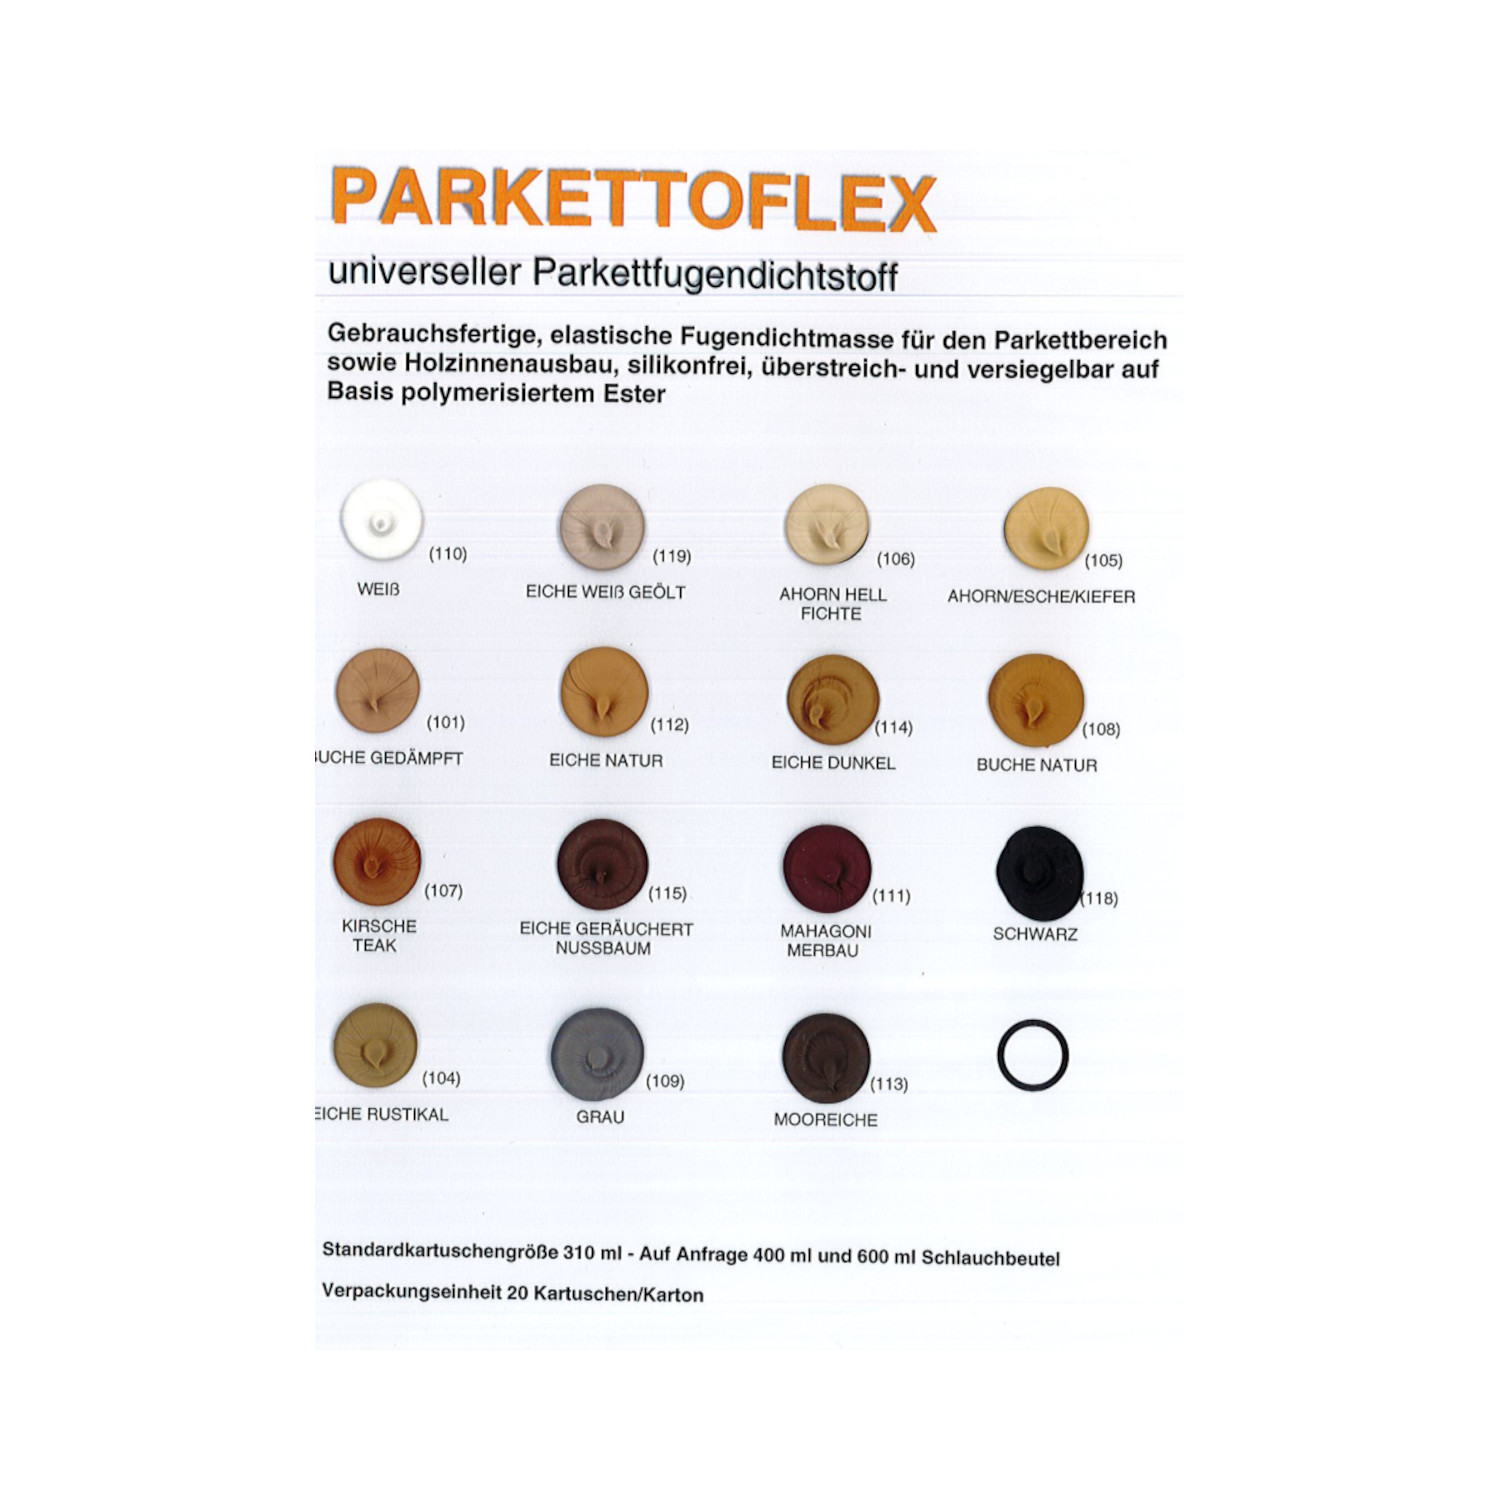 Hesolast A 2000 - Parkettoflex - Fugenmasse 310 ml elastisch, silikonfrei, überstreichbar, Weiß (110)